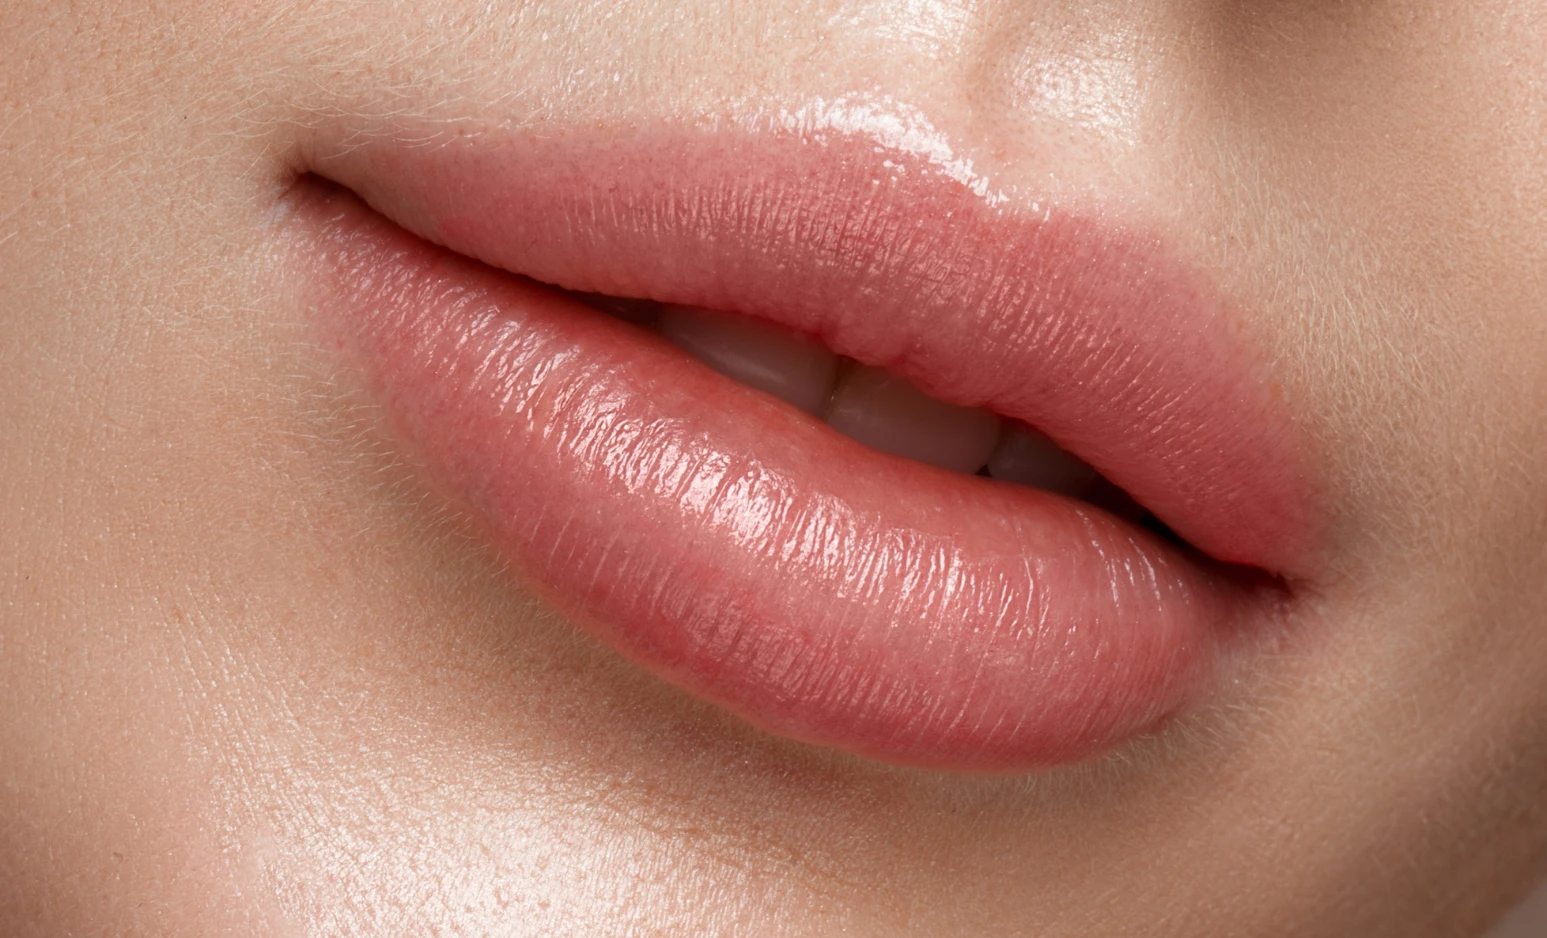 Augmentation volume des lèvres